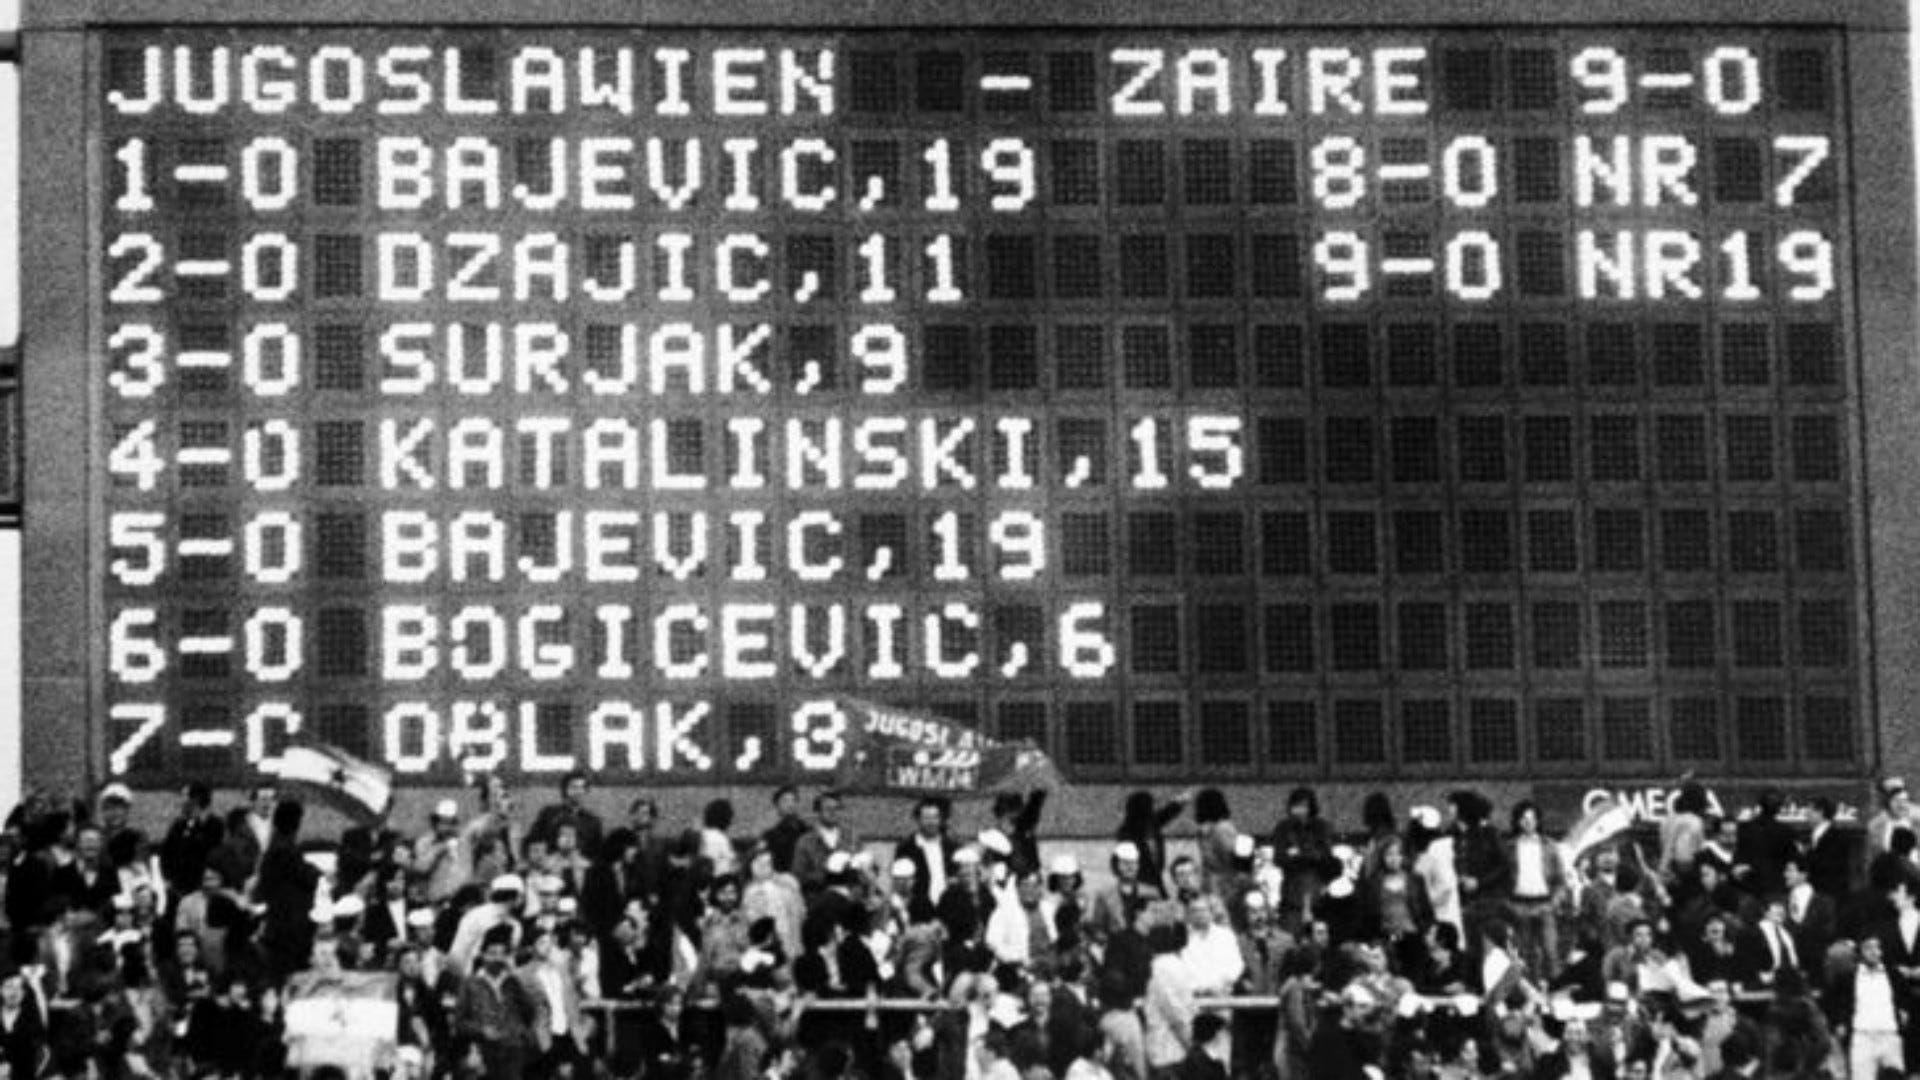 yugoslavia zaire copa del mundo 1974